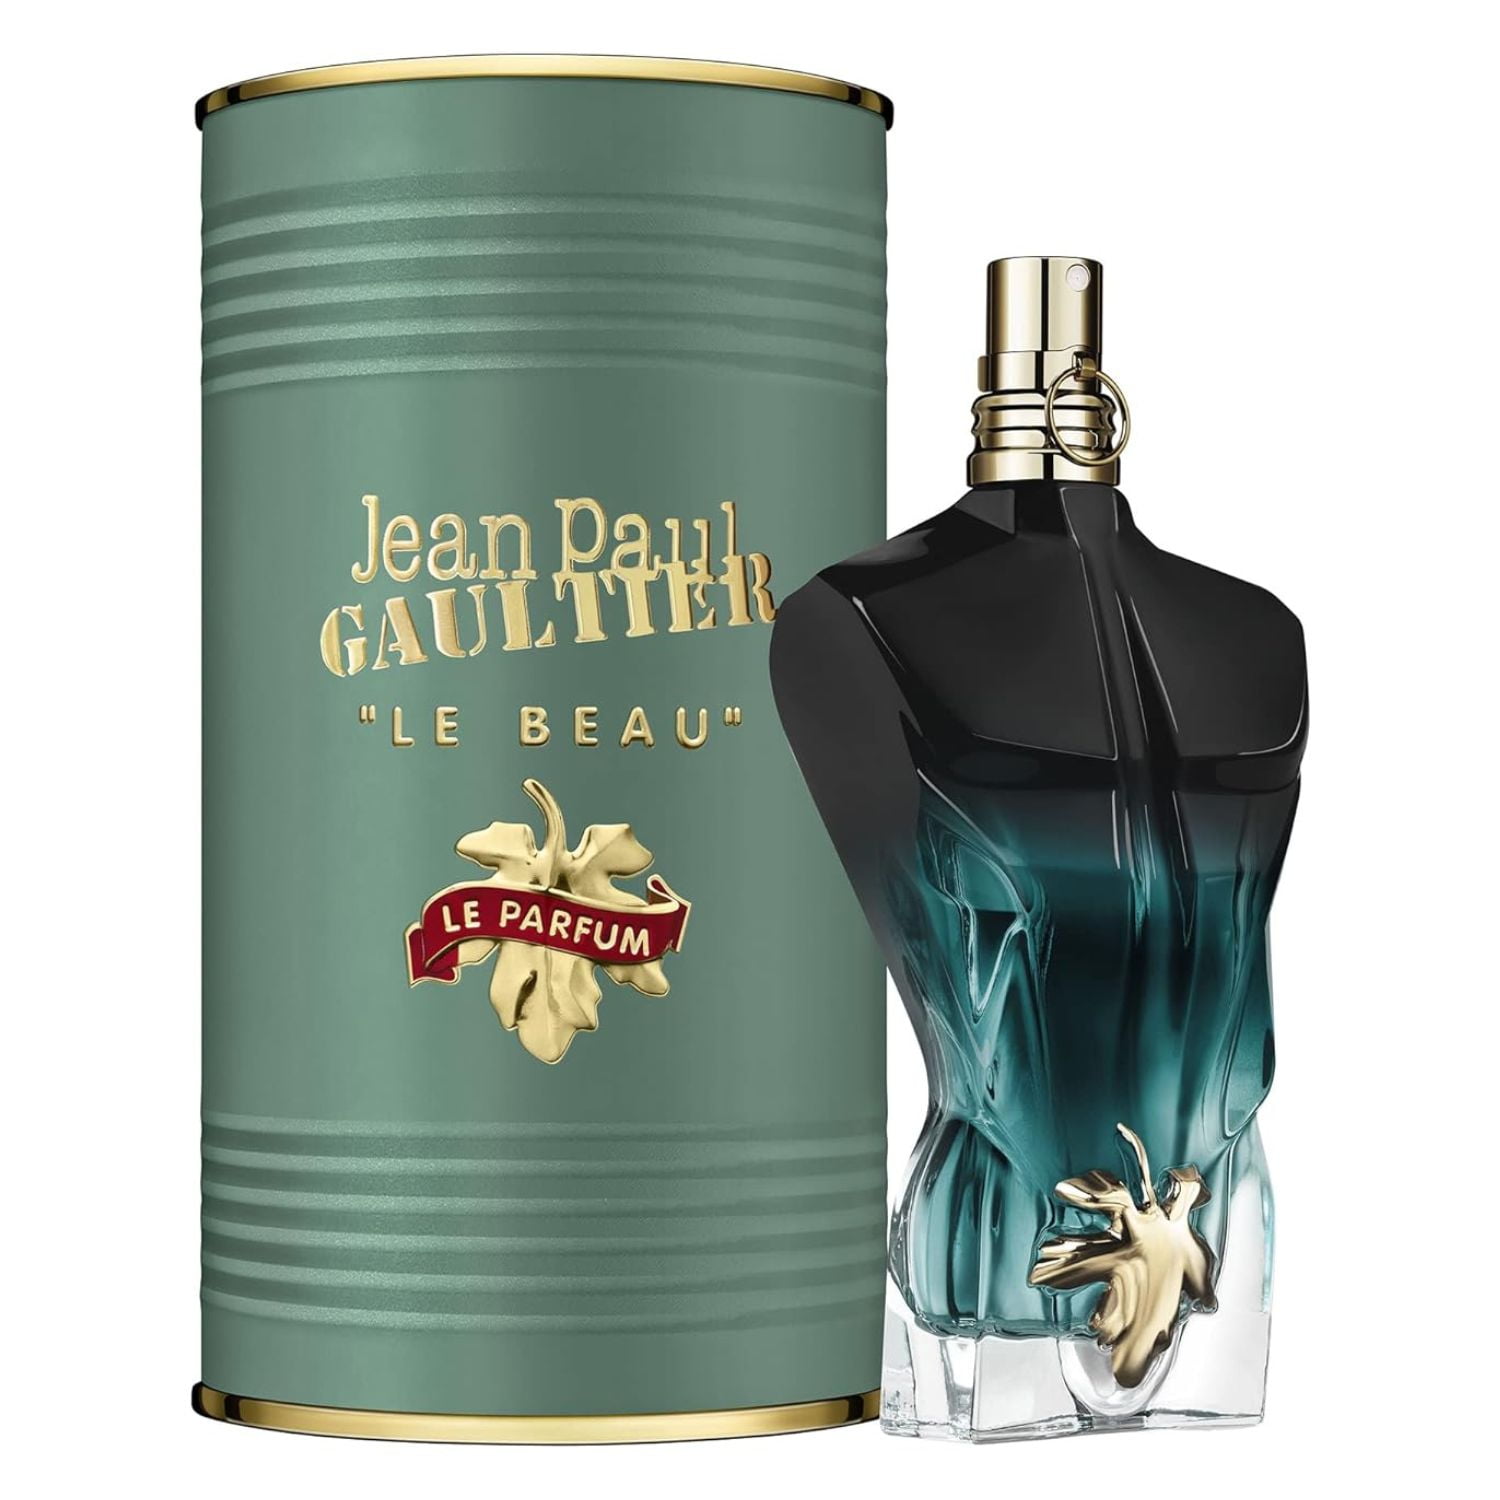 Jean Paul Gaultier Le Beau Eau De Parfum Intense Spray For Men, 4.2 oz